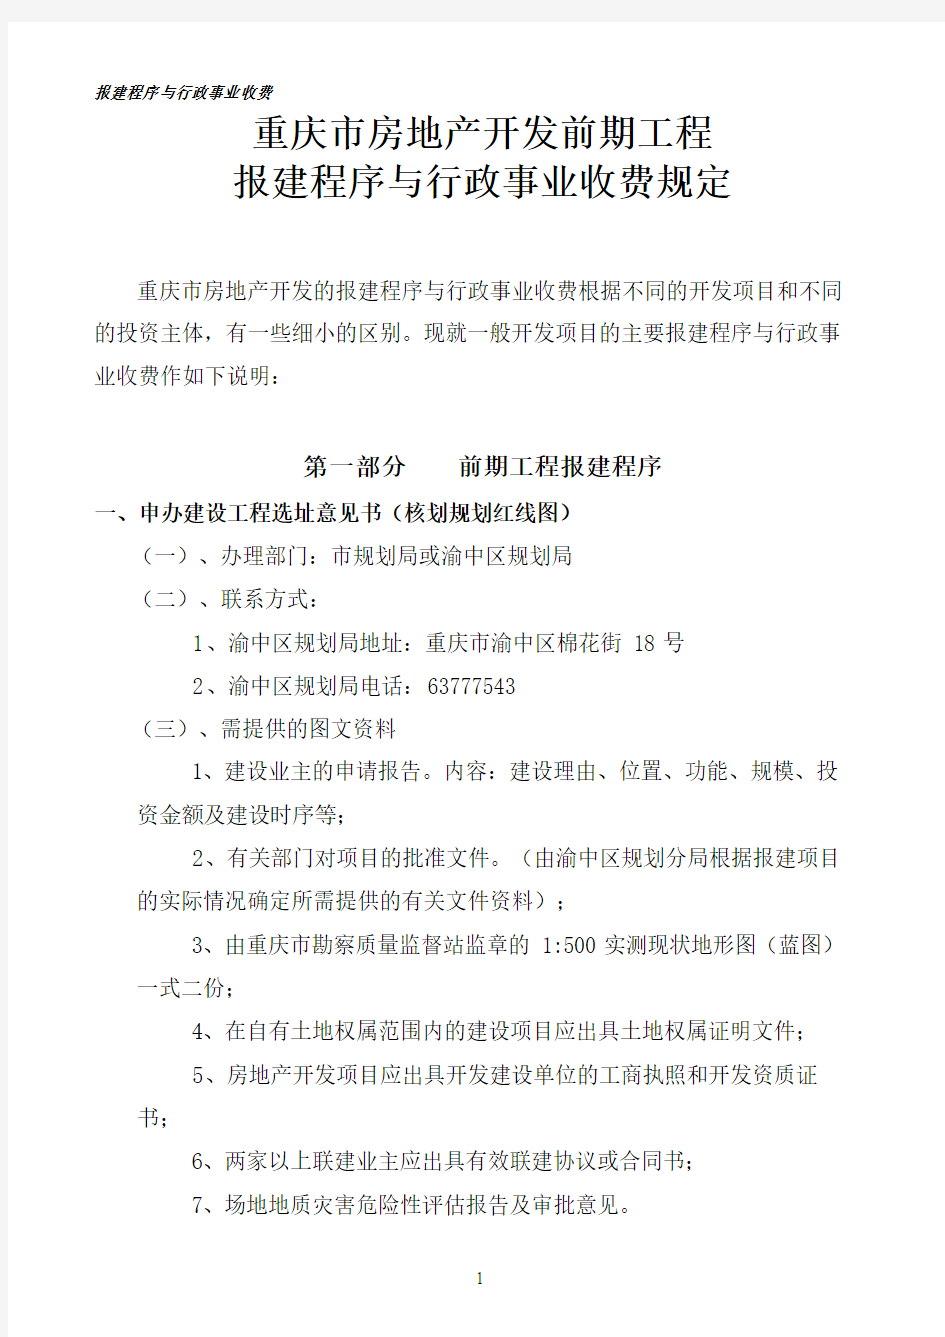 重庆市房地产开发报建程序与行政事业收费规定